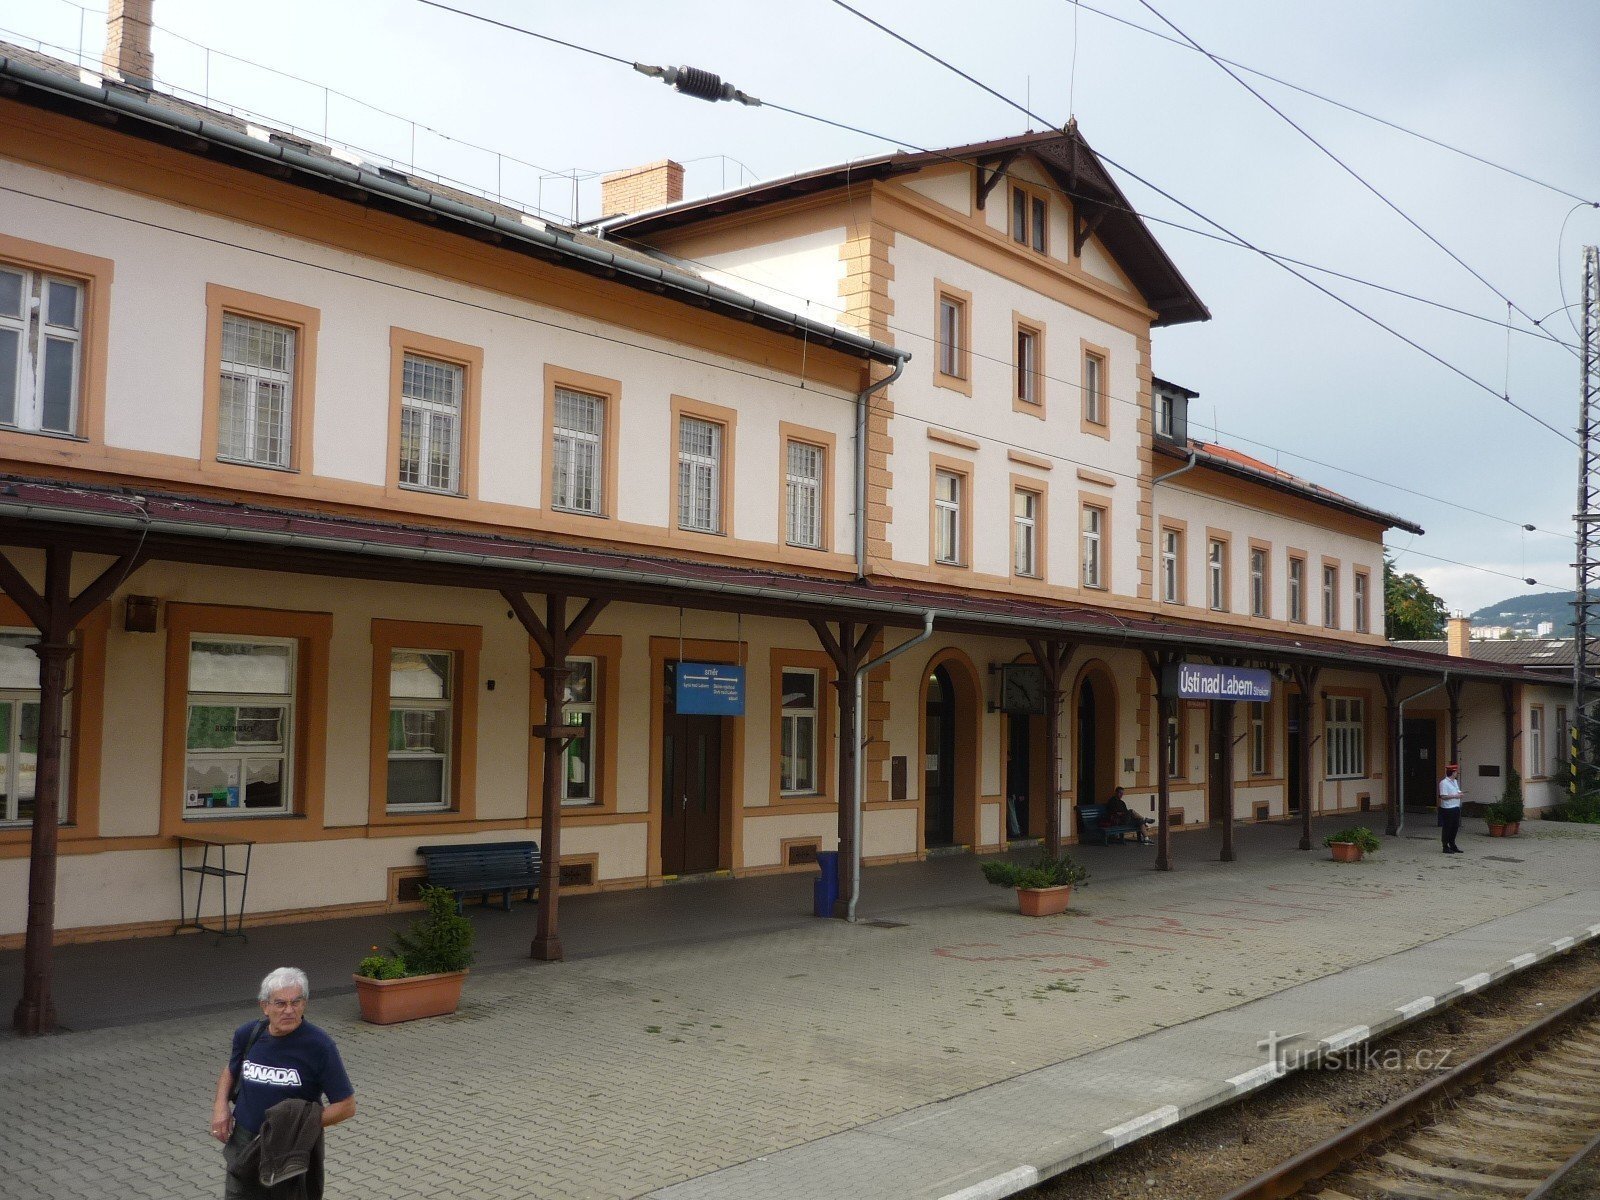 Střekovské nádraží in Ústí nad Labem